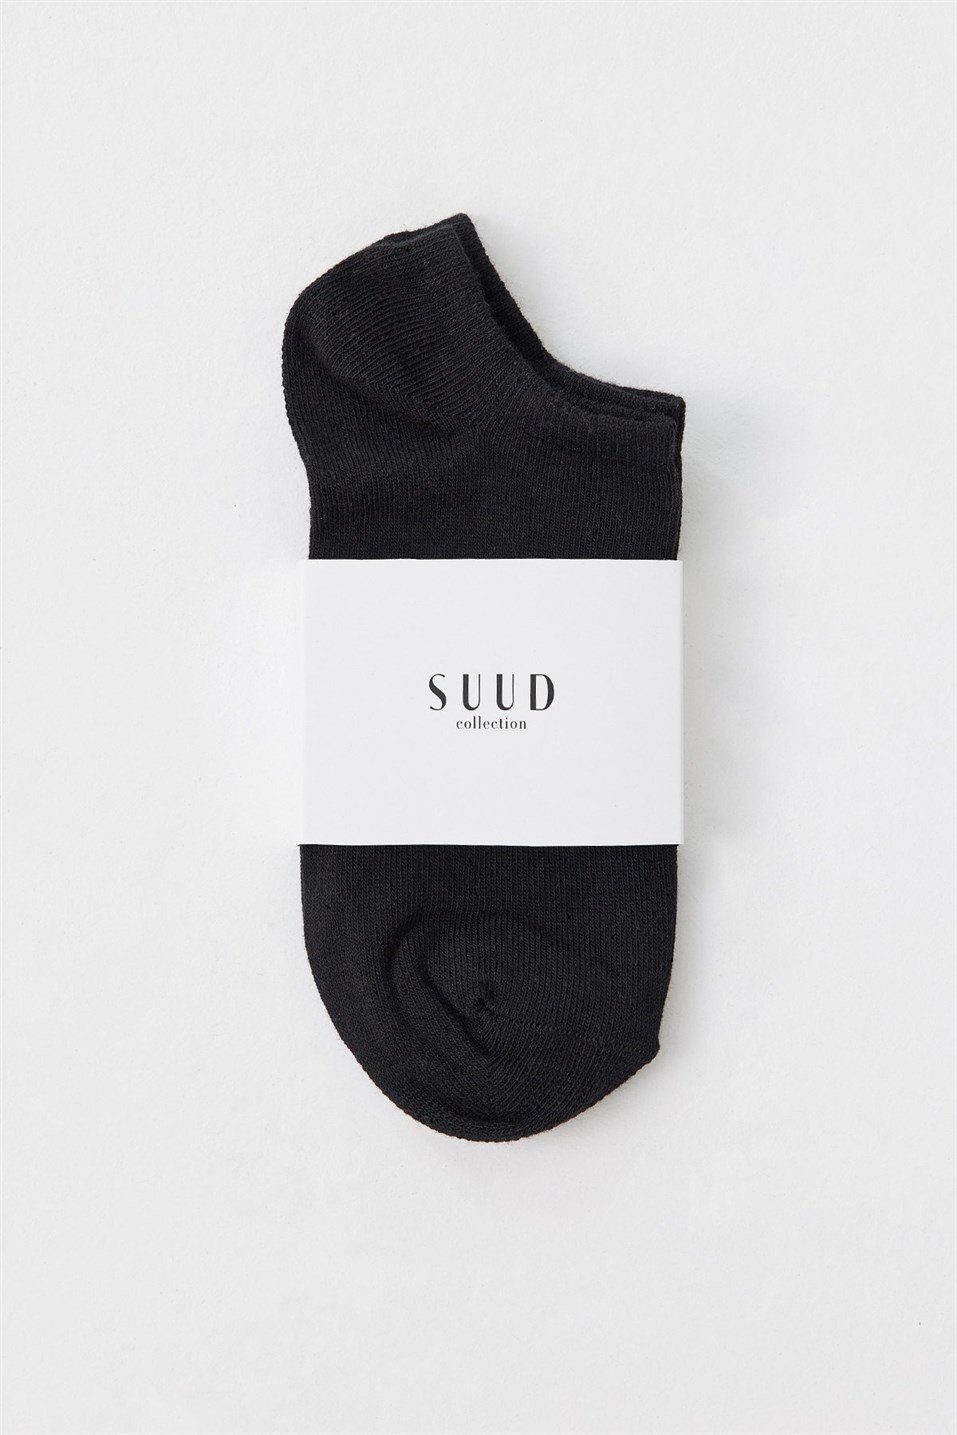 Siyah Pamuklu Patik Çorap